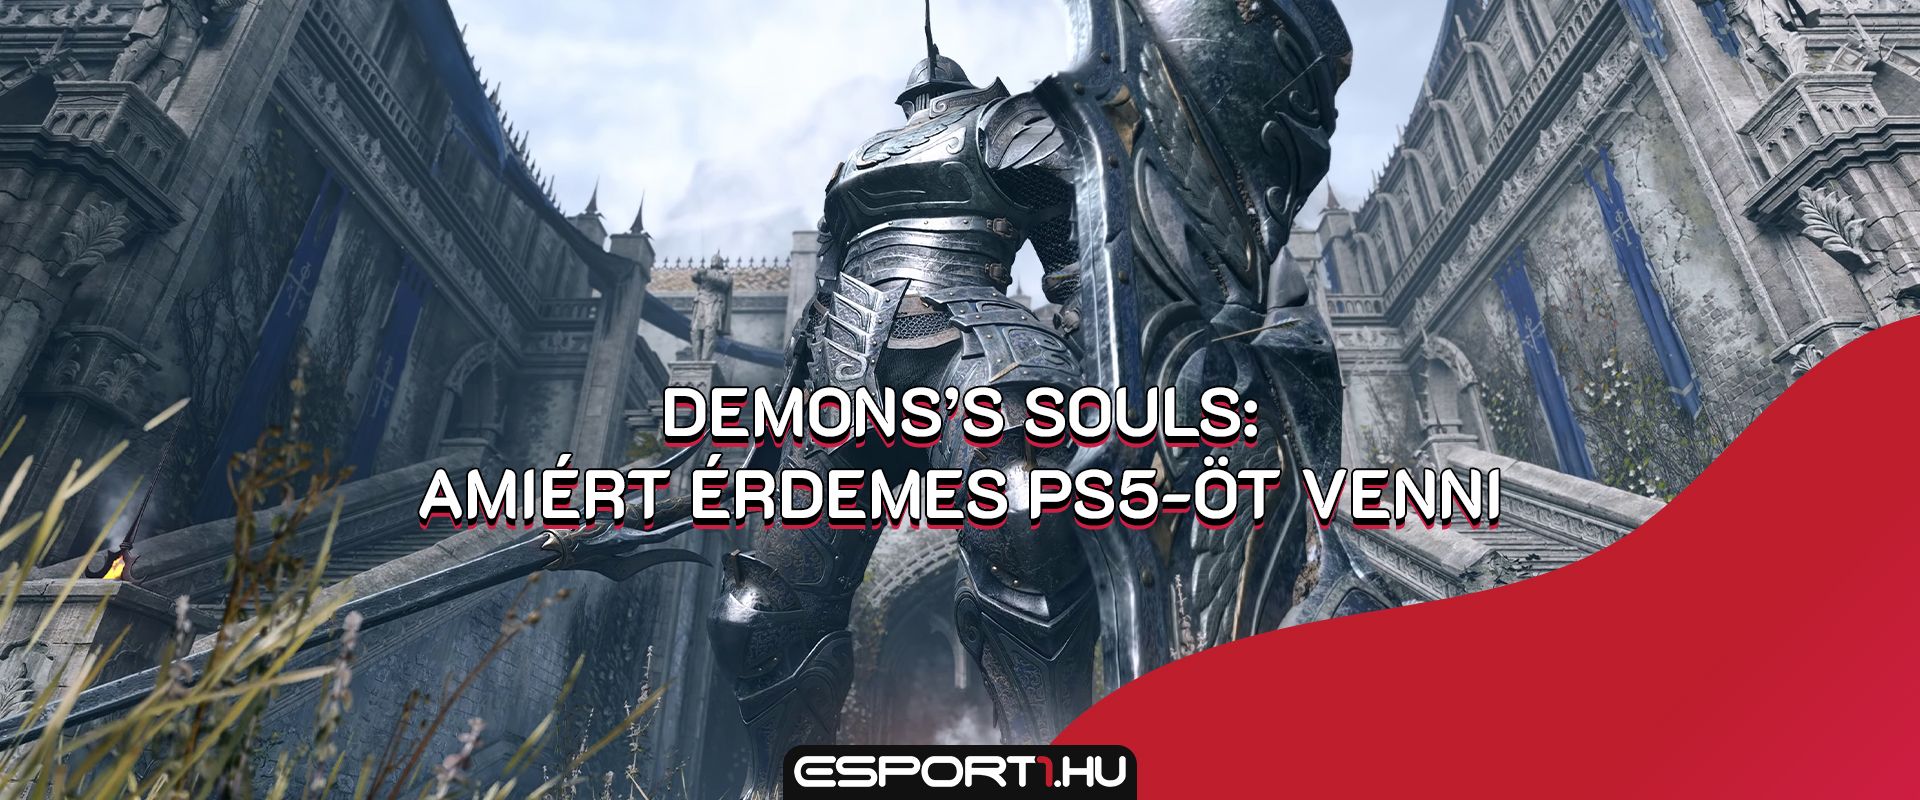 Demon's Souls -  PS5-ön tért vissza a legenda